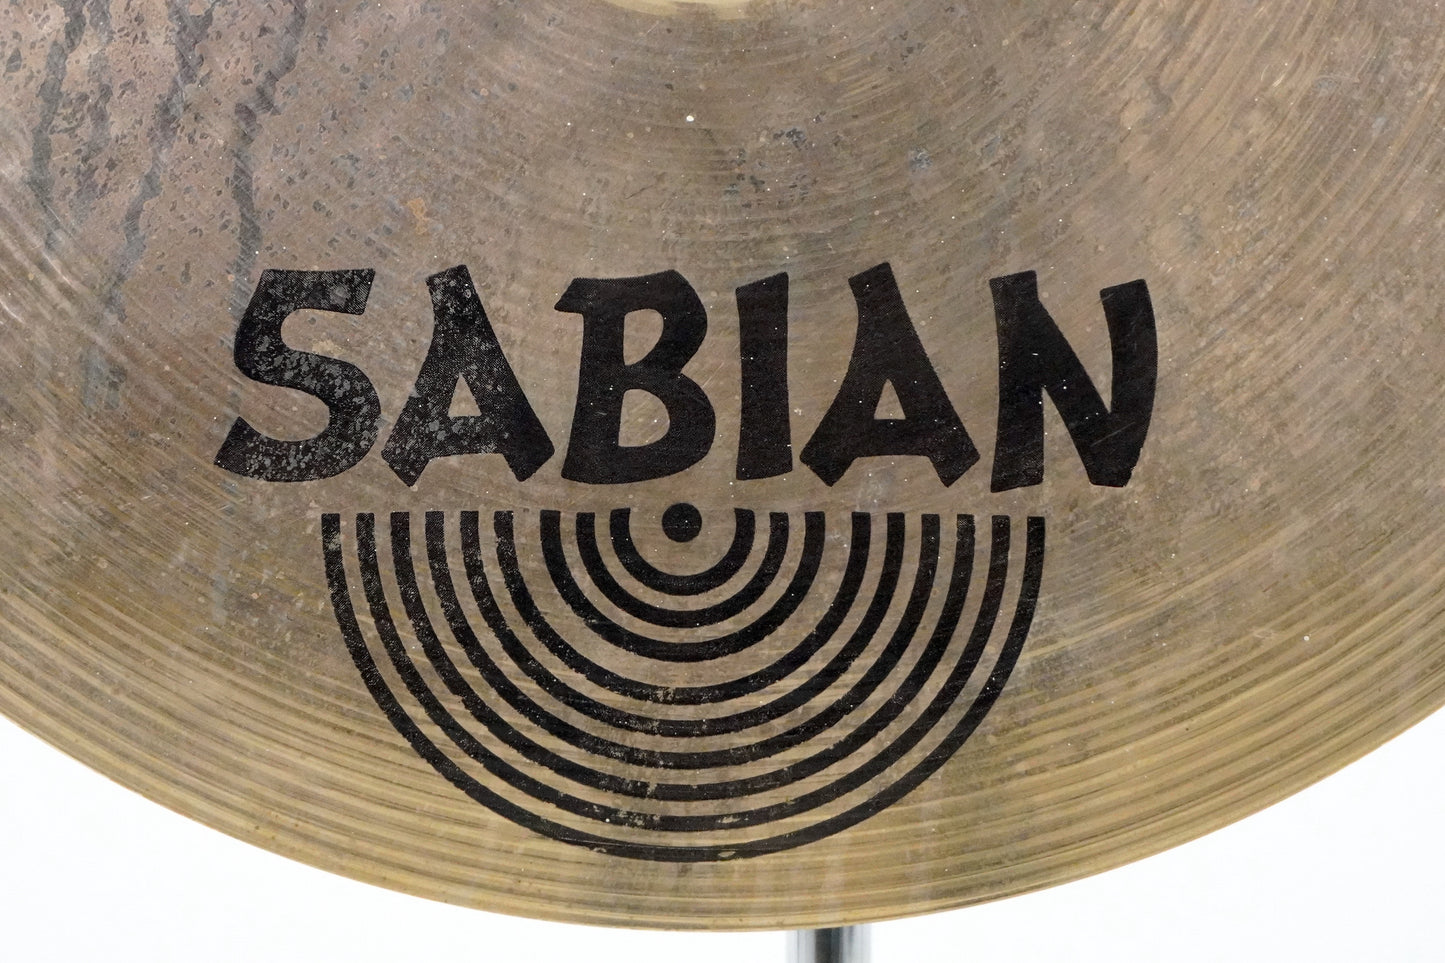 Sabian 16” HH Medium Thin Crash